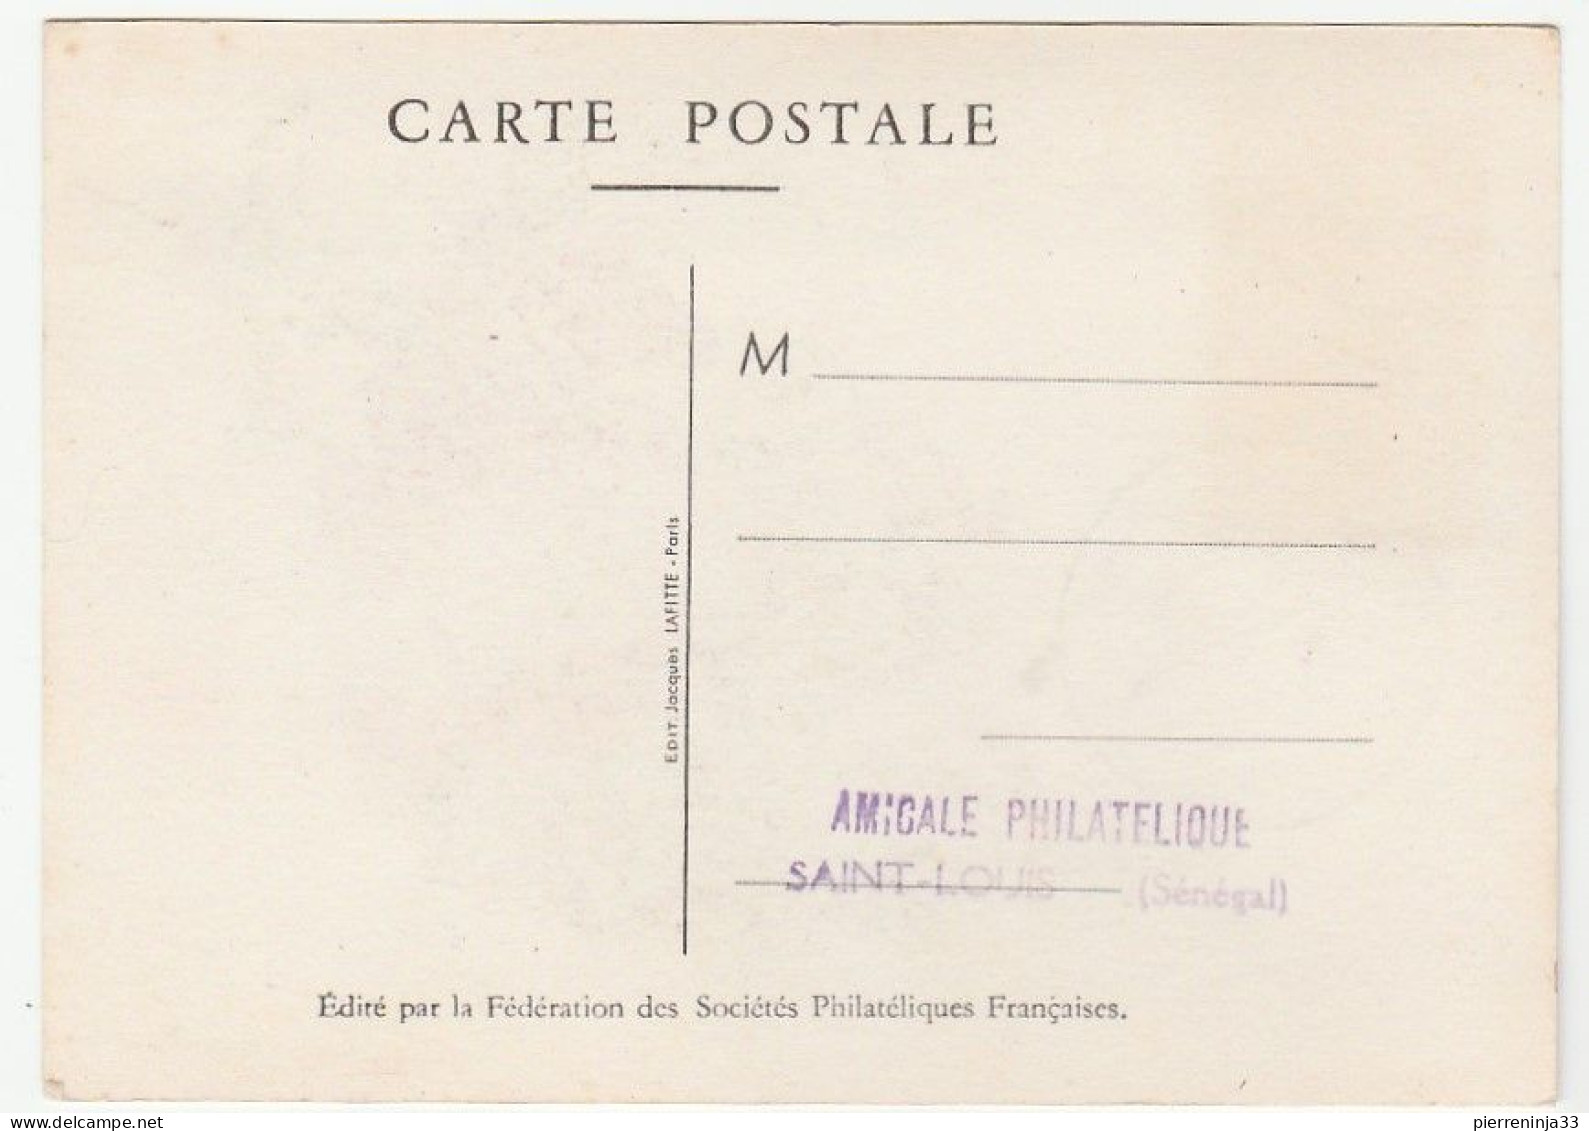 Carte Journée Du Timbre, Saint Louis / Sénégal, 1948, Diligence - Briefe U. Dokumente